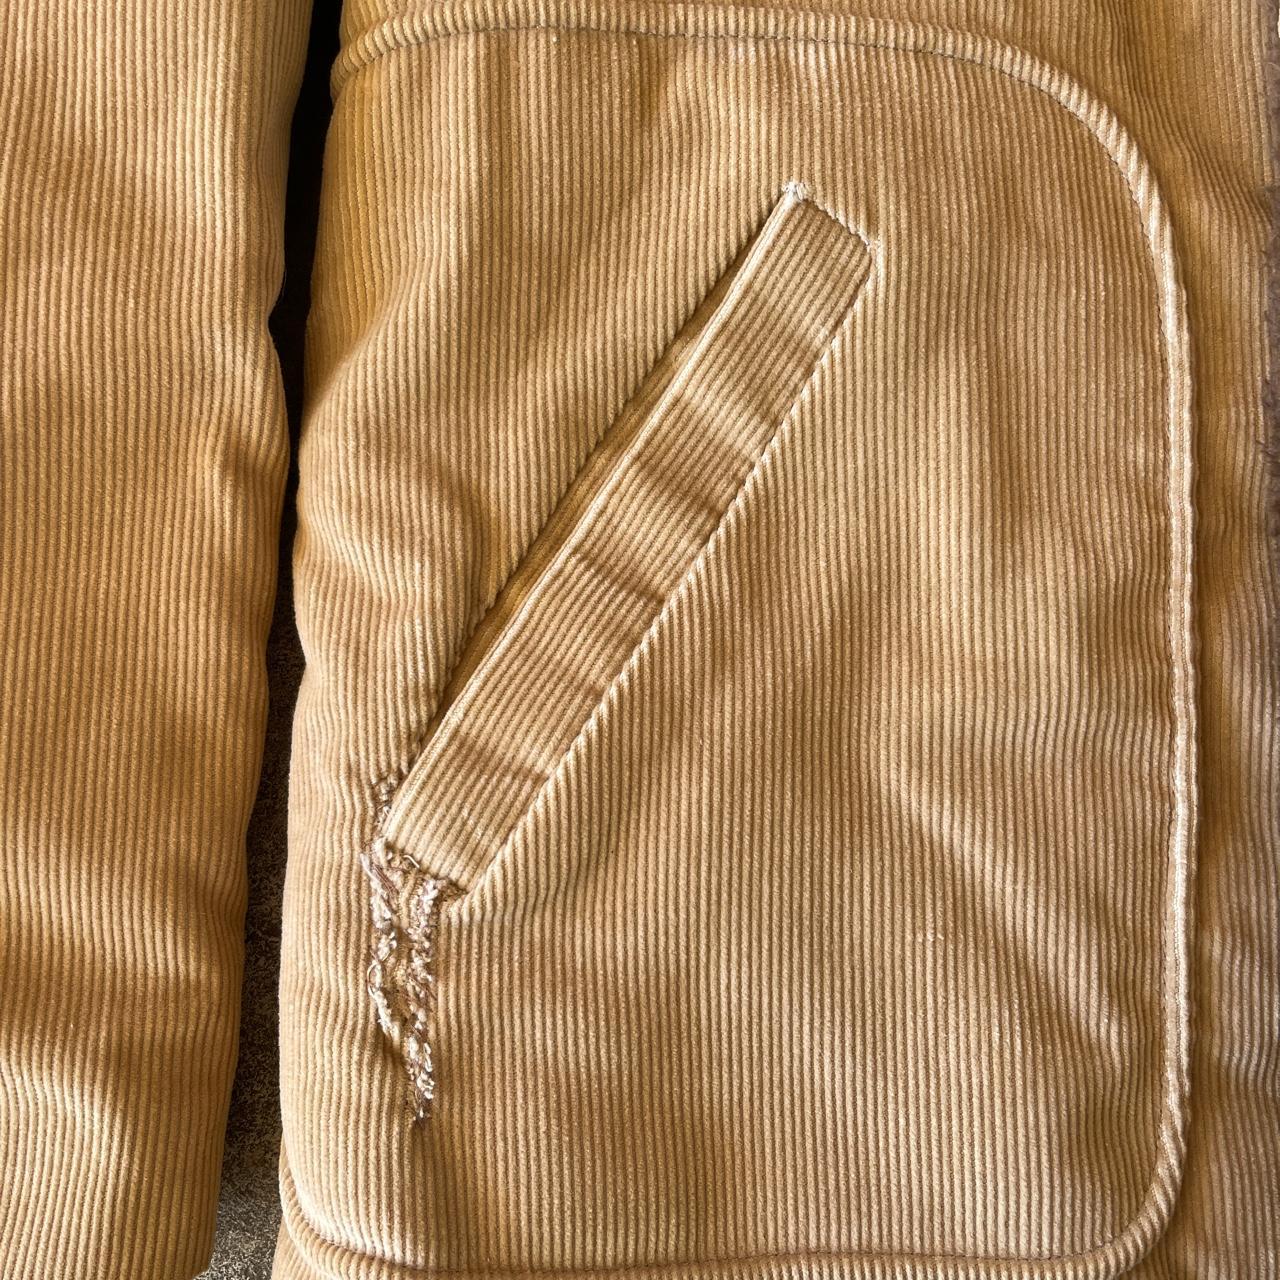 Sears Men's Tan and Brown Coat (2)